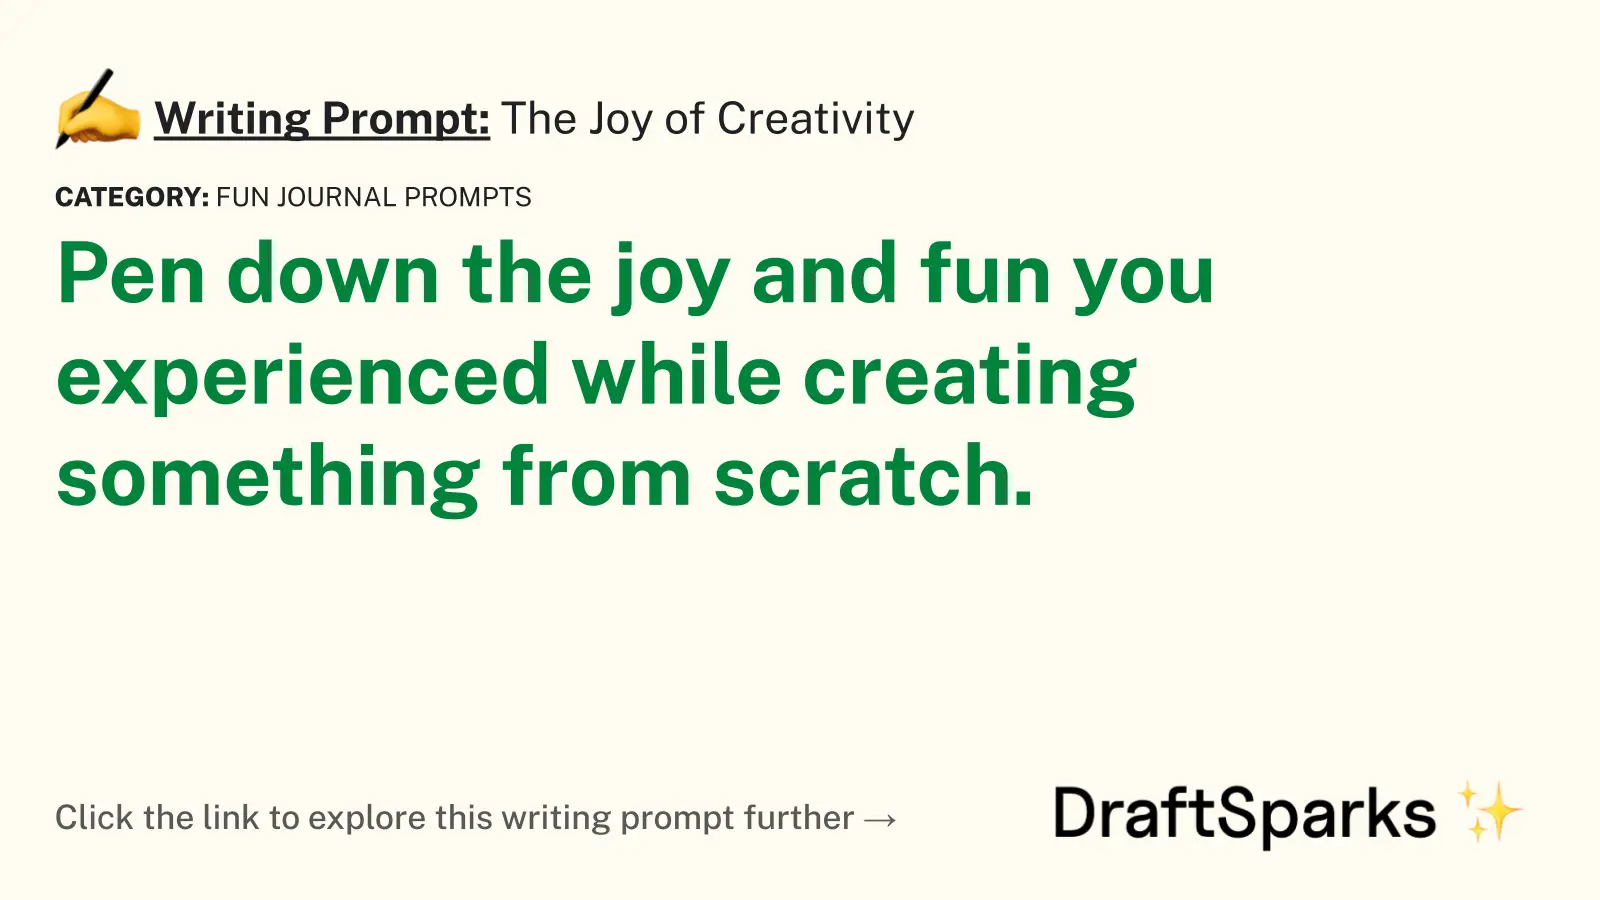 The Joy of Creativity